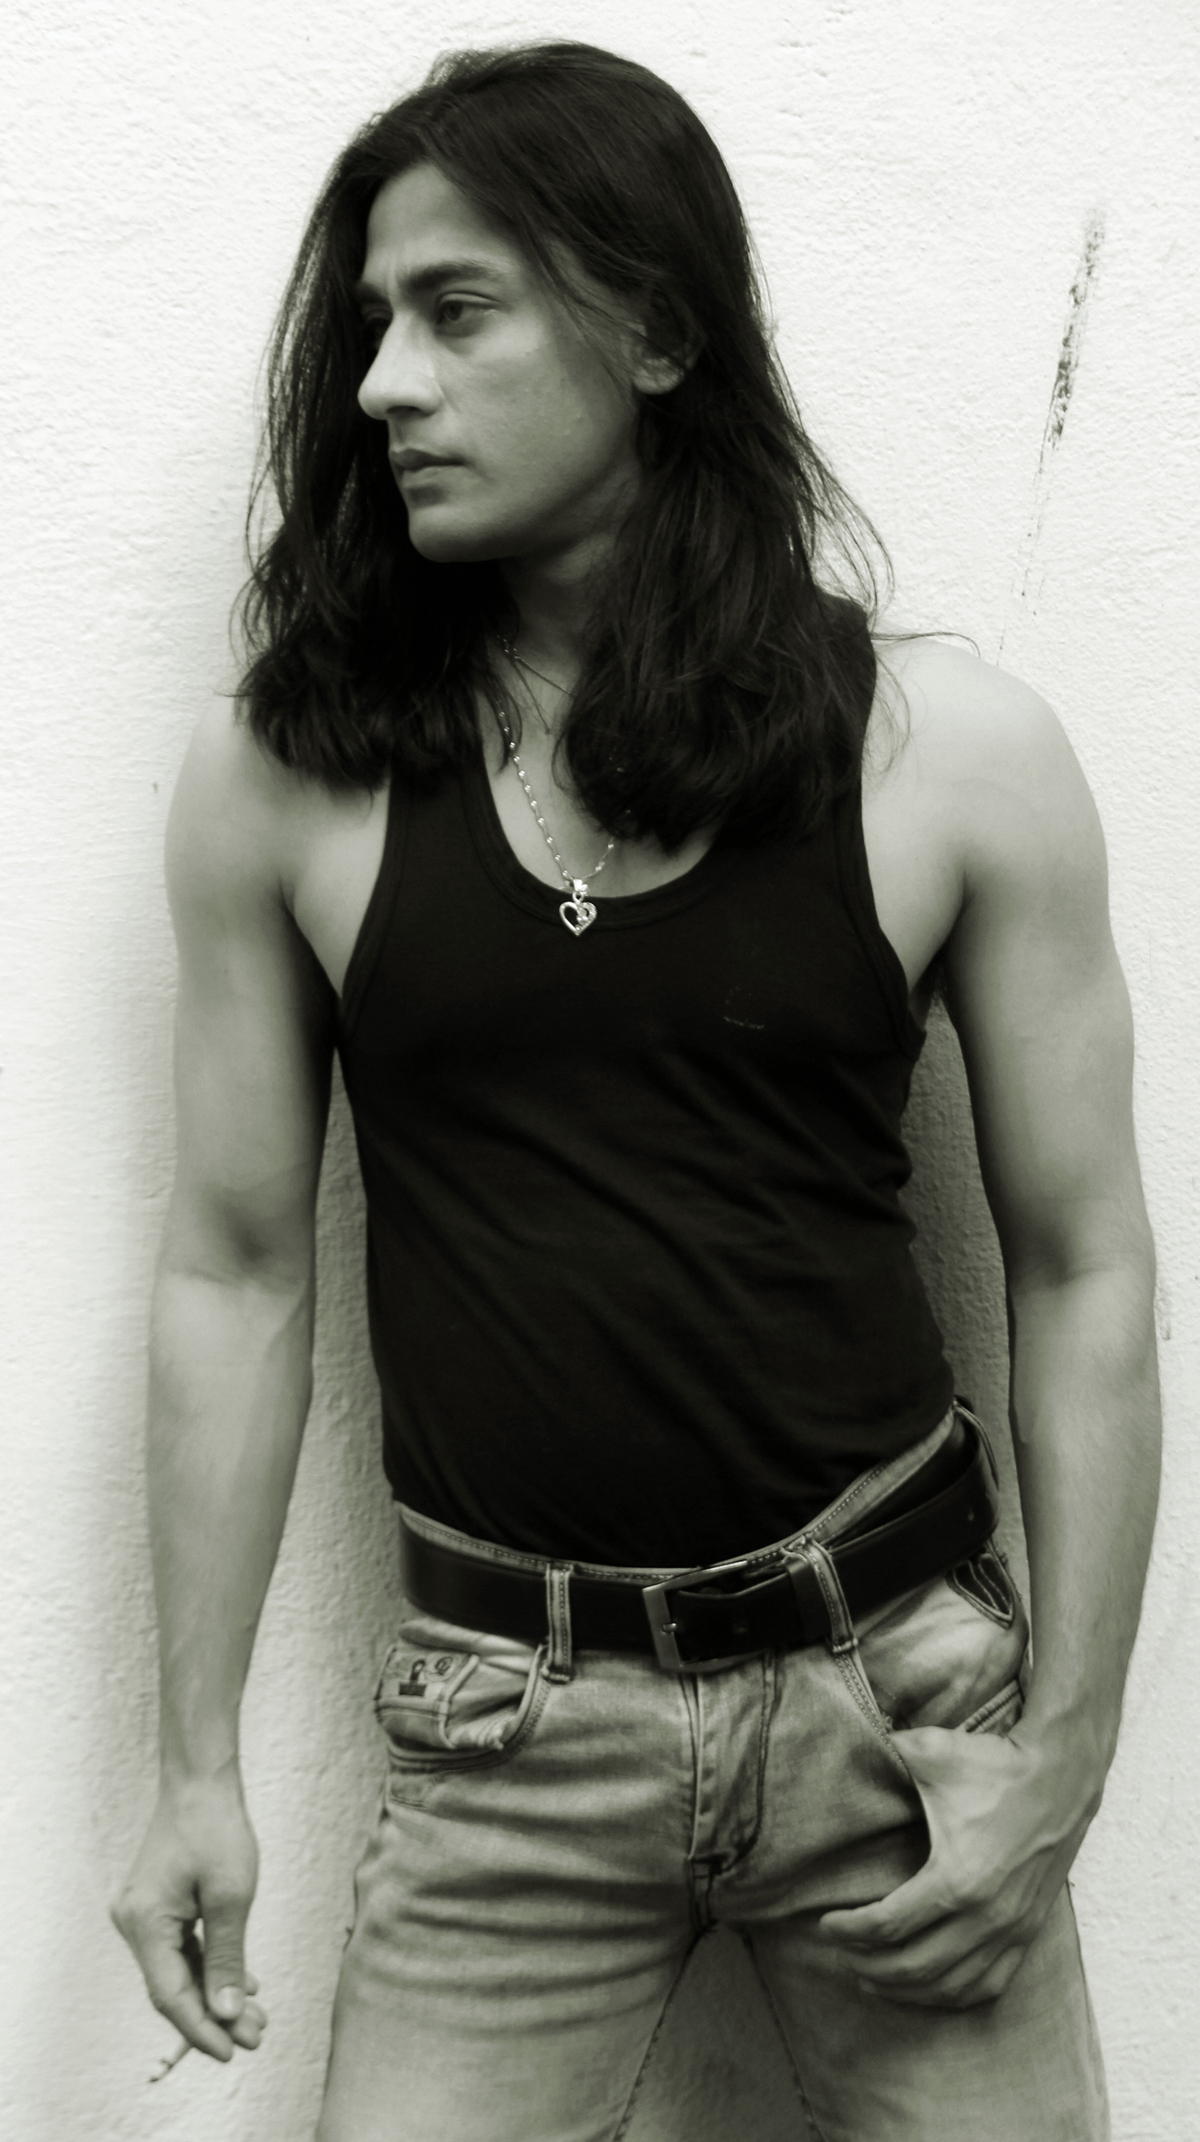 Raj with Long Hairstyle | Men With Long Hair - Nam giới để tóc dài bức ảnh  (41547130) - fanpop